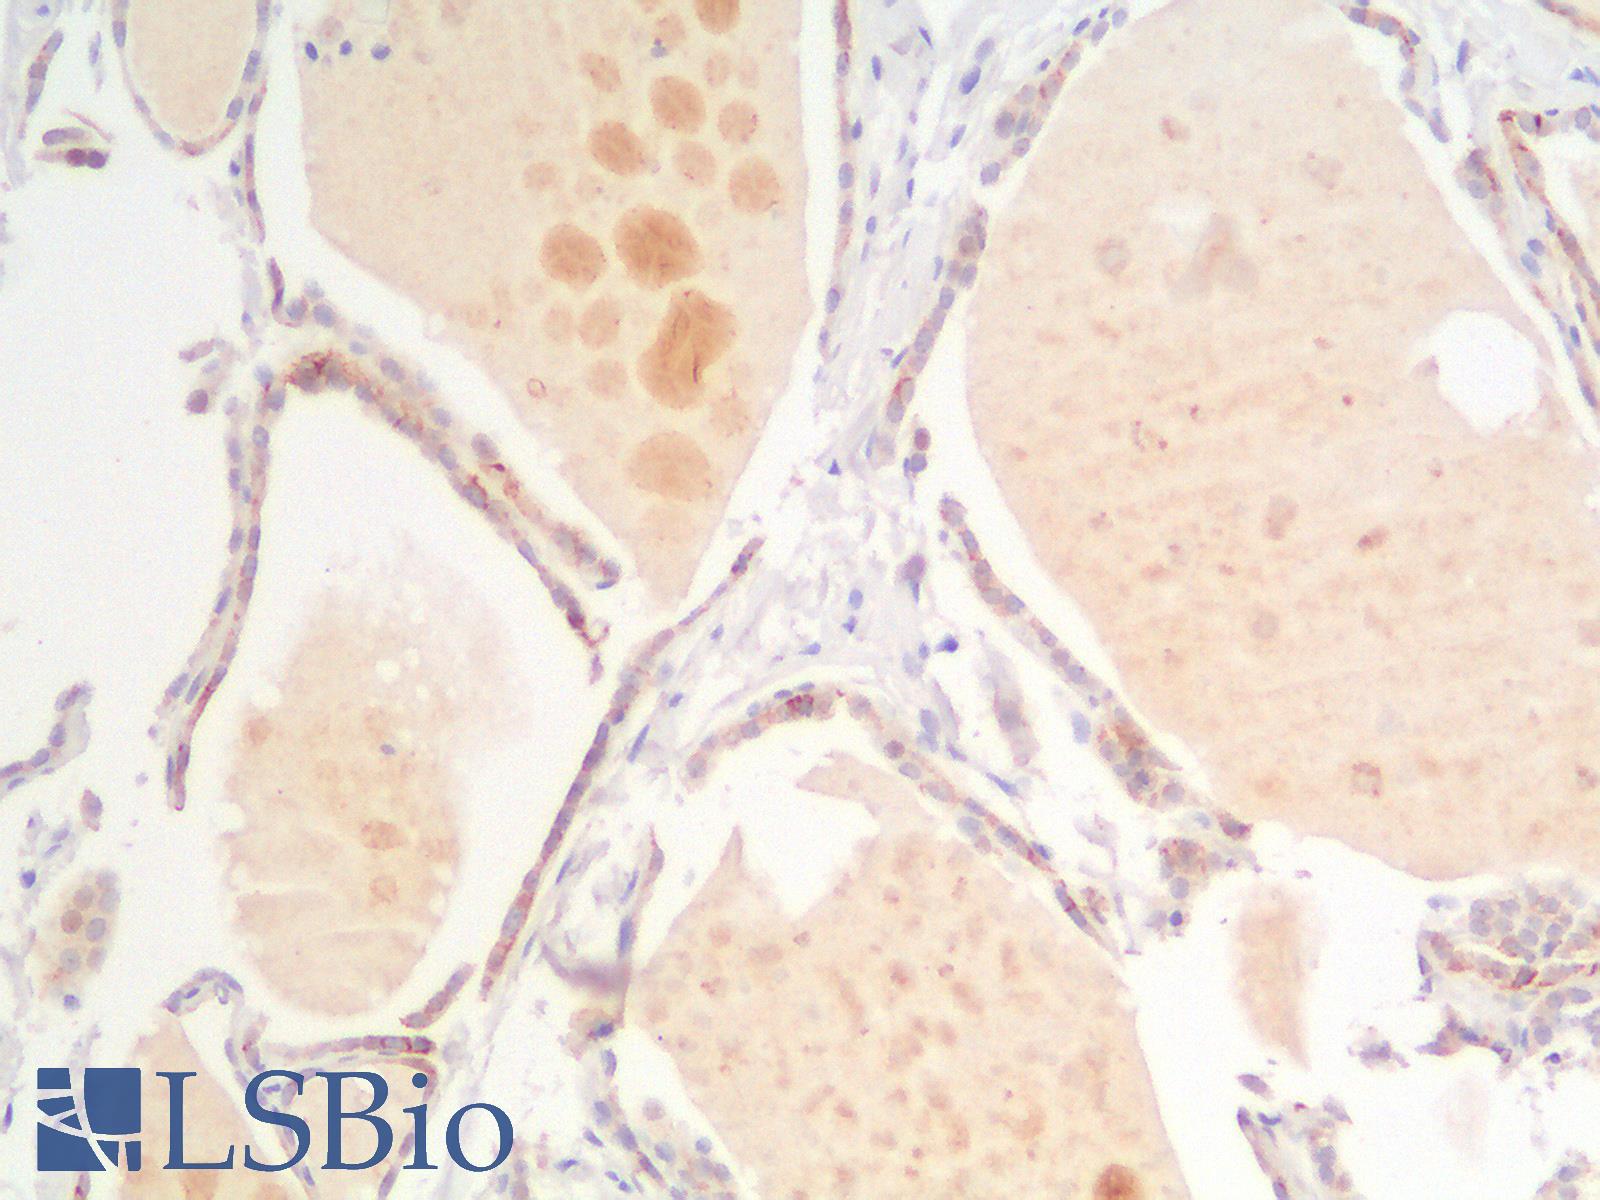 CDH16 / Cadherin 16 Antibody - Human Thyroid: Formalin-Fixed, Paraffin-Embedded (FFPE)